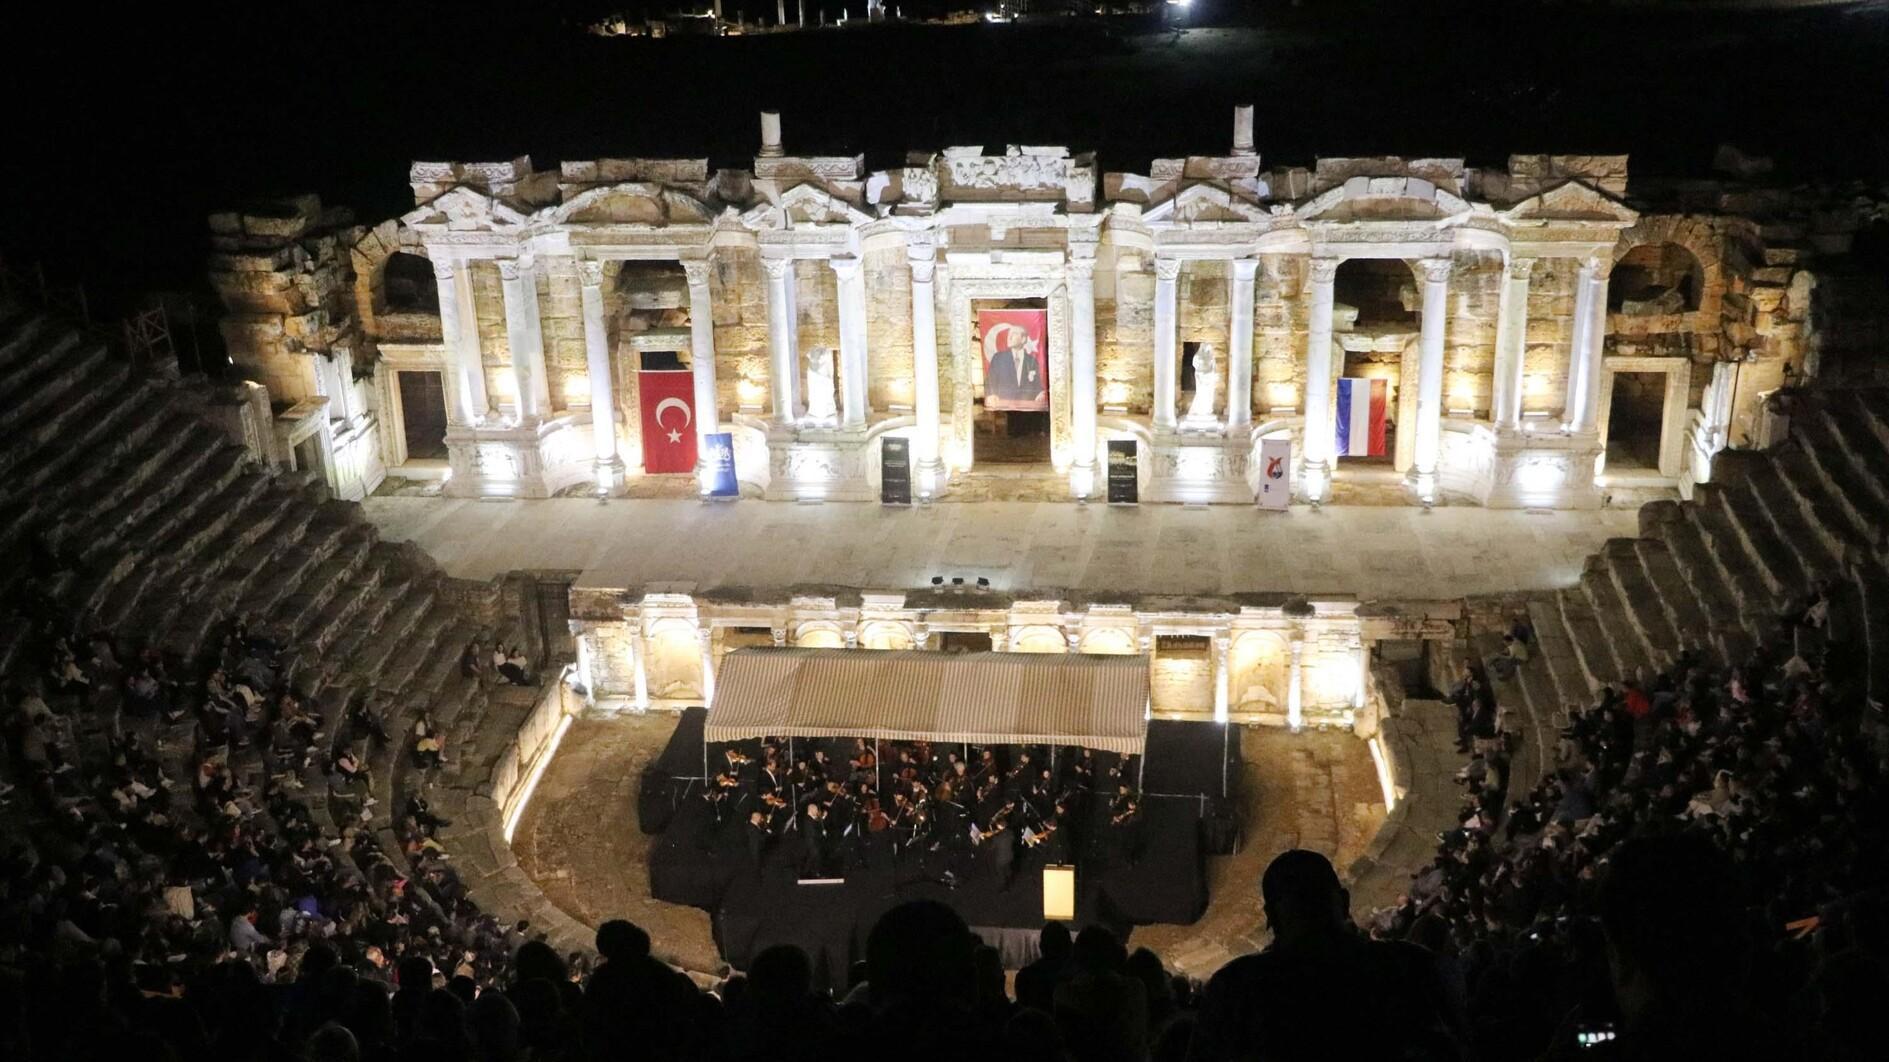 Türkiye, Nederland viert relaties met concert in Hierapolis